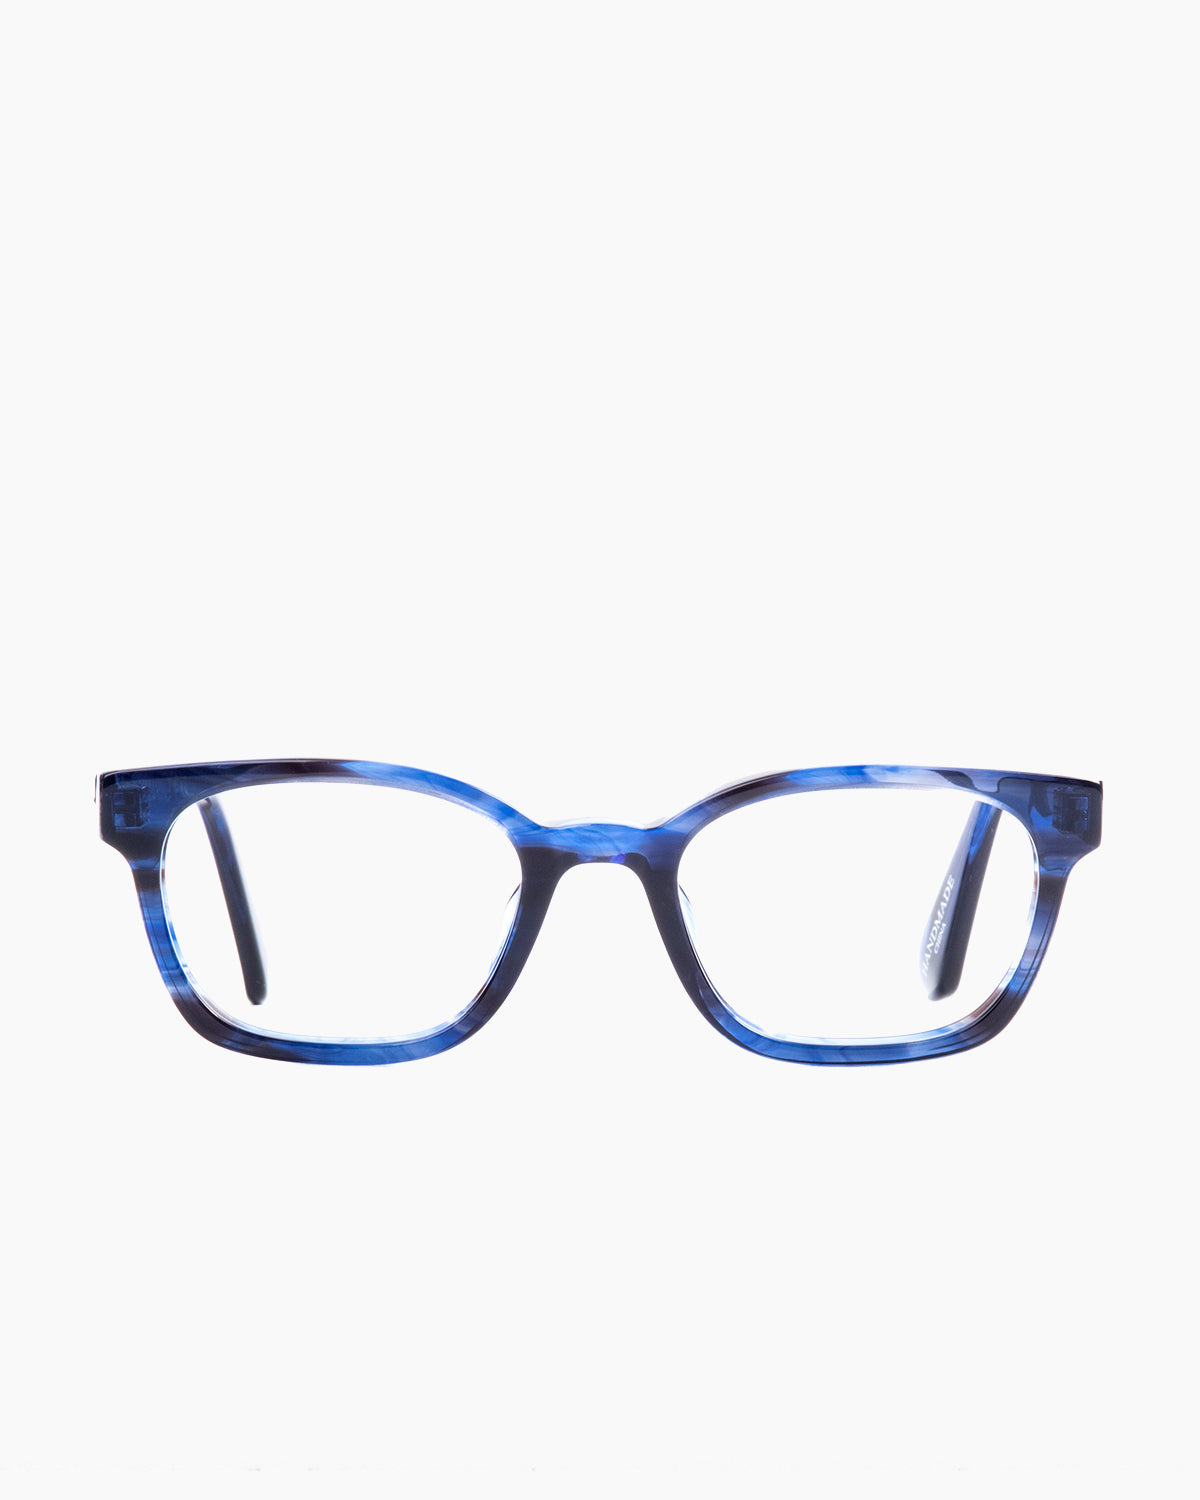 Evolve-Benz-134 | glasses bar:  Marie-Sophie Dion